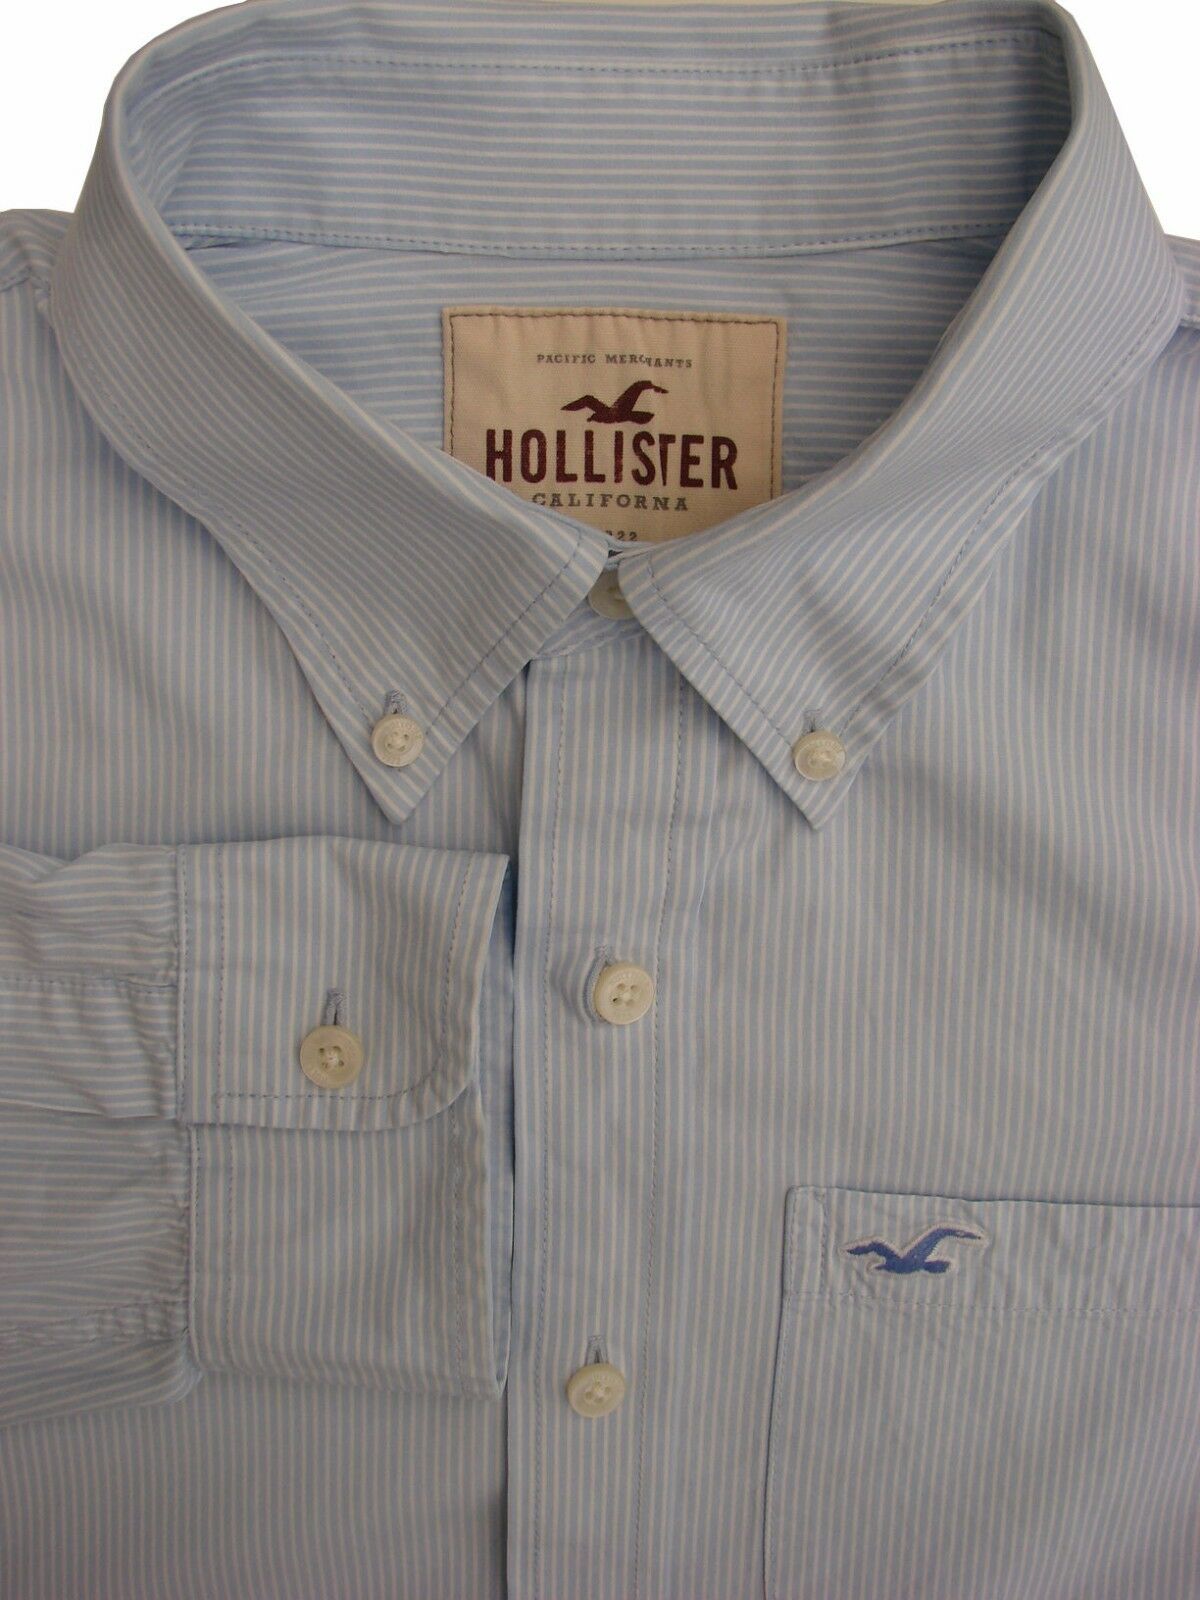 Hollister striped button down dress shirt